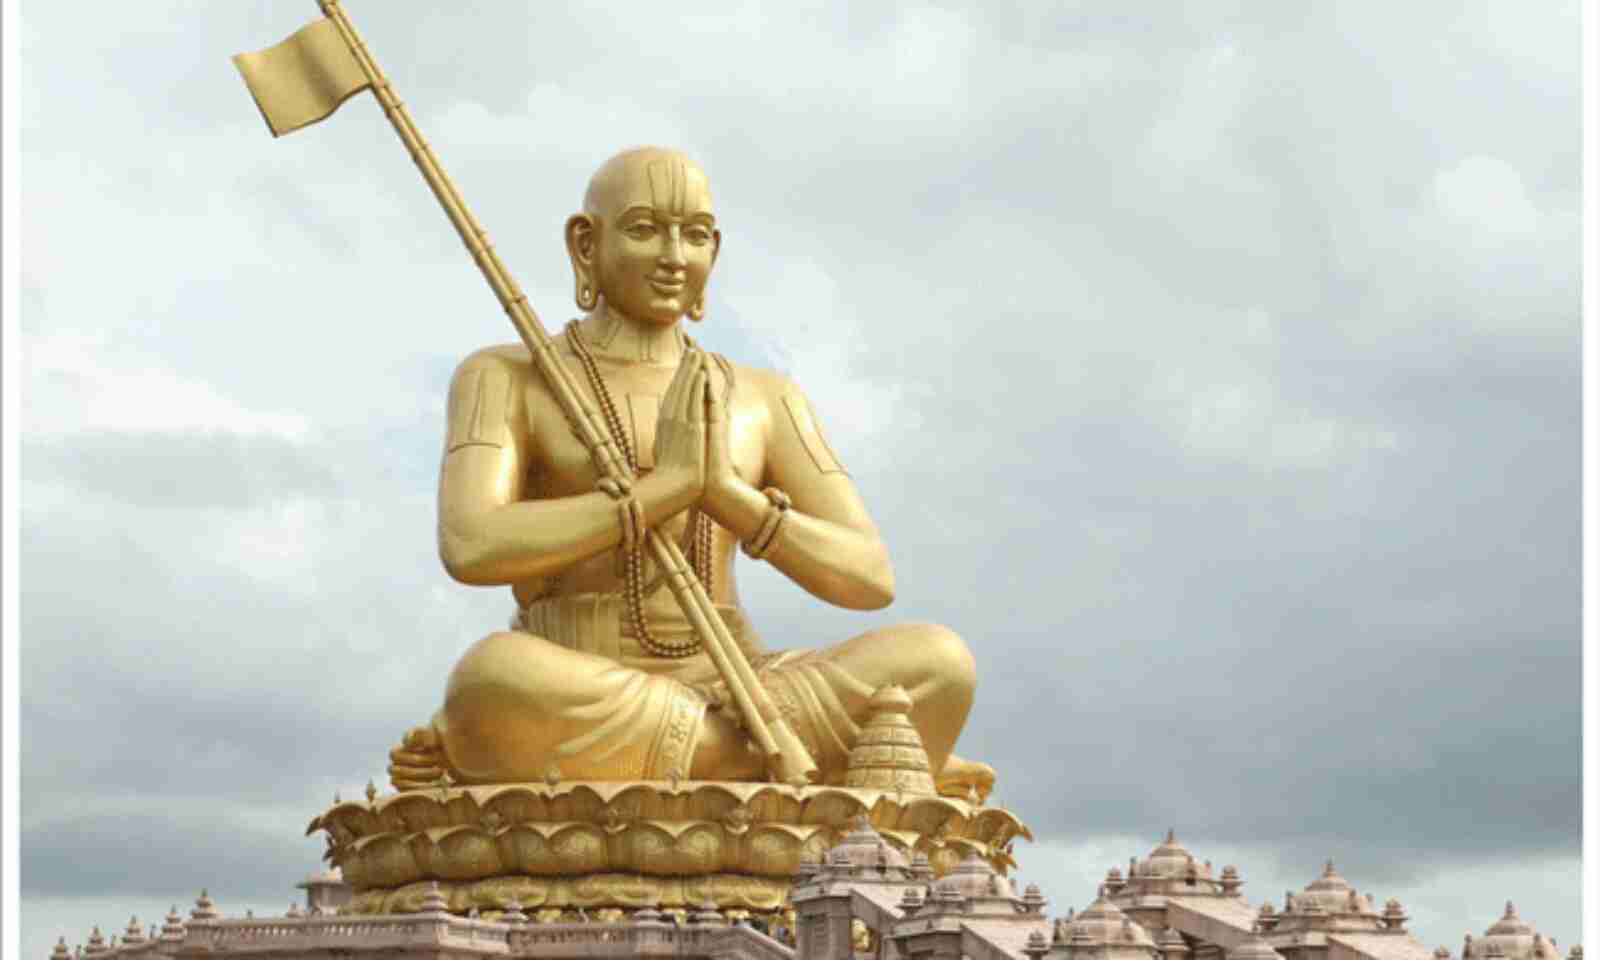 Ramanujacharyulu: ఎవరీ రామానుజాచార్యులు.. ఆయన ఏం చేశారు?